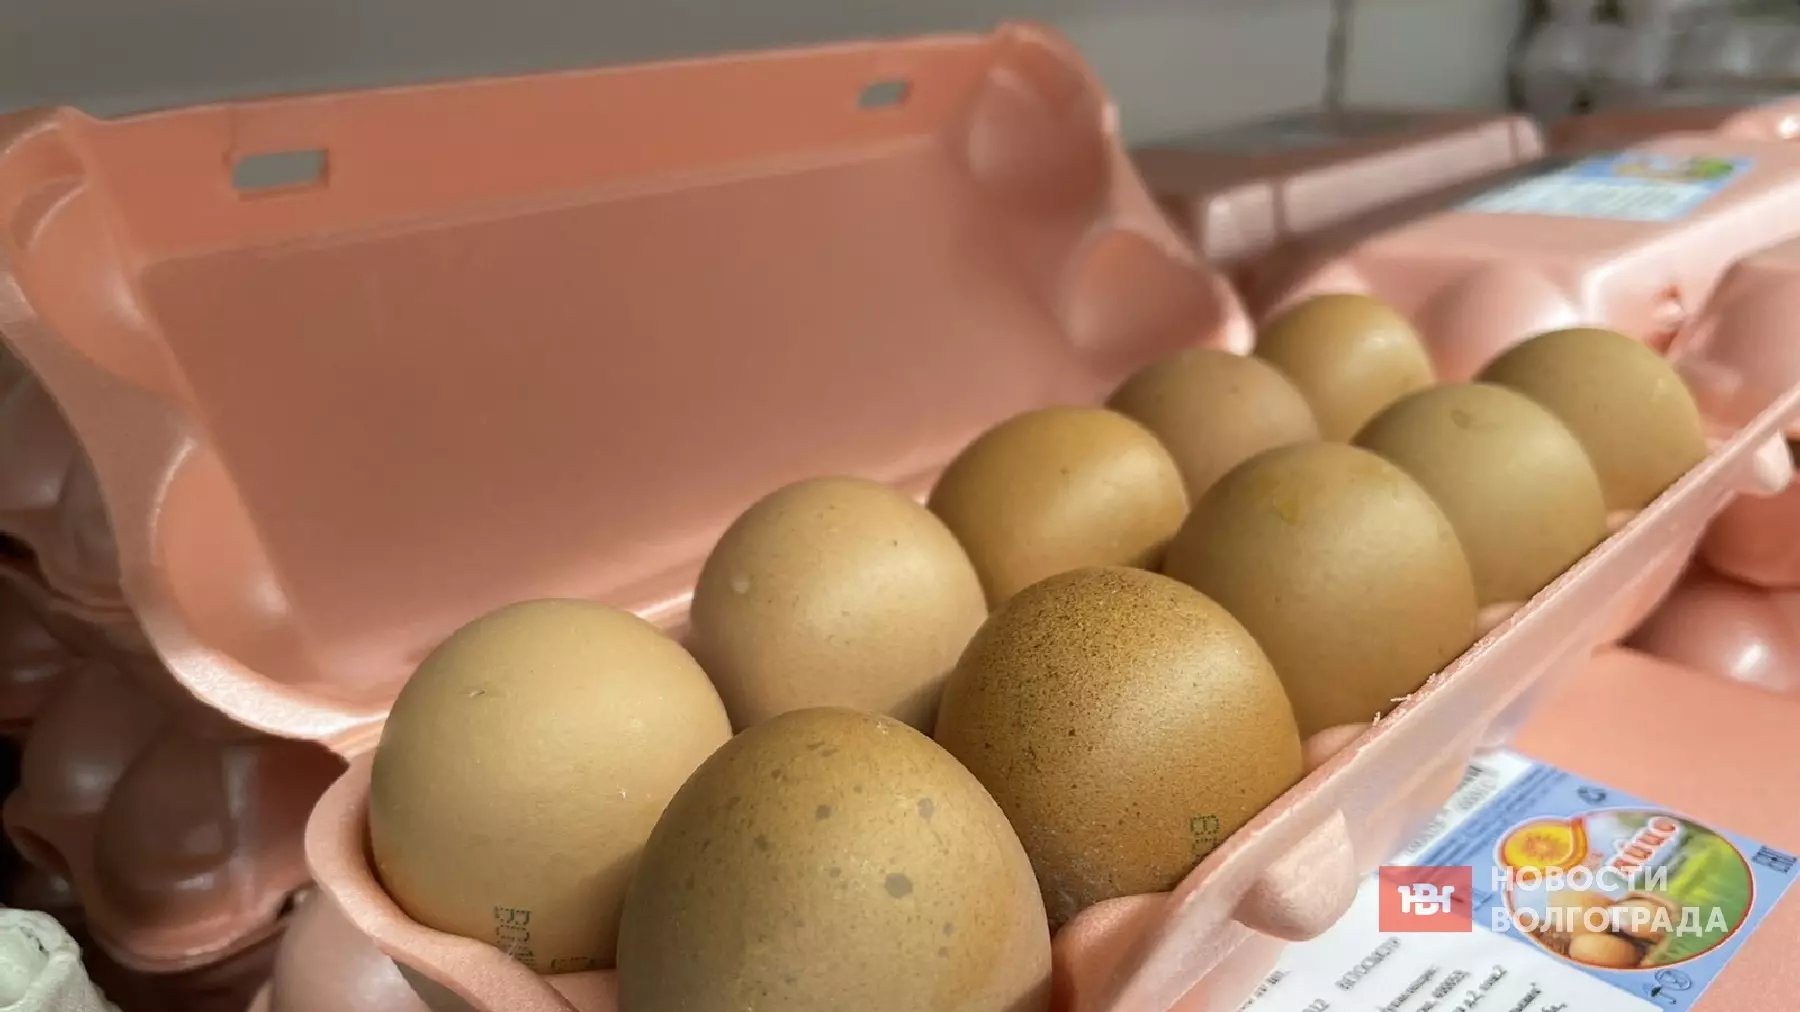 Волгоградские магазины наполнят турецкими яйцами